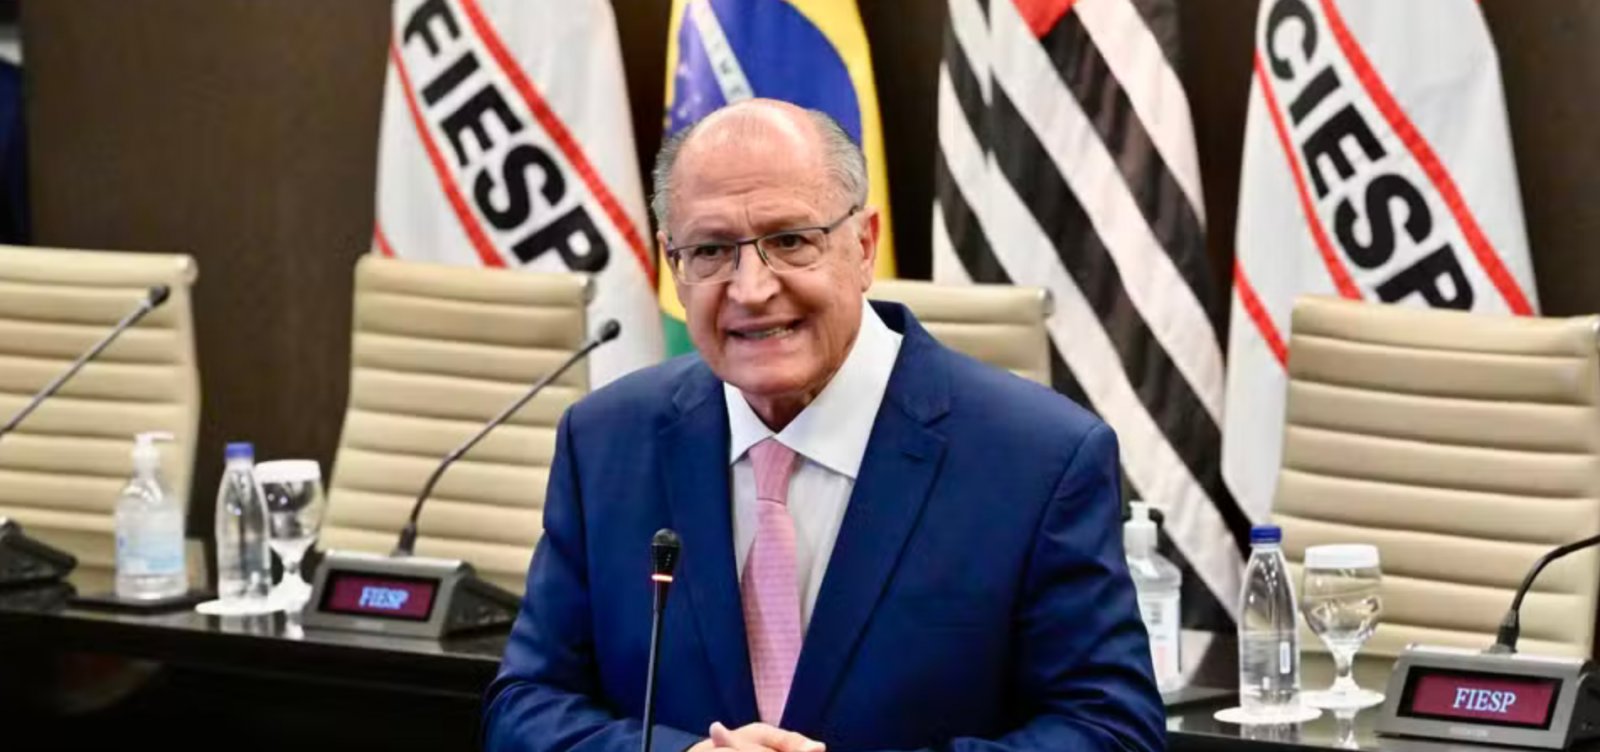 Vice-presidente Geraldo Alckmin é diagnosticado com Covid-19 e cancela agenda desta segunda